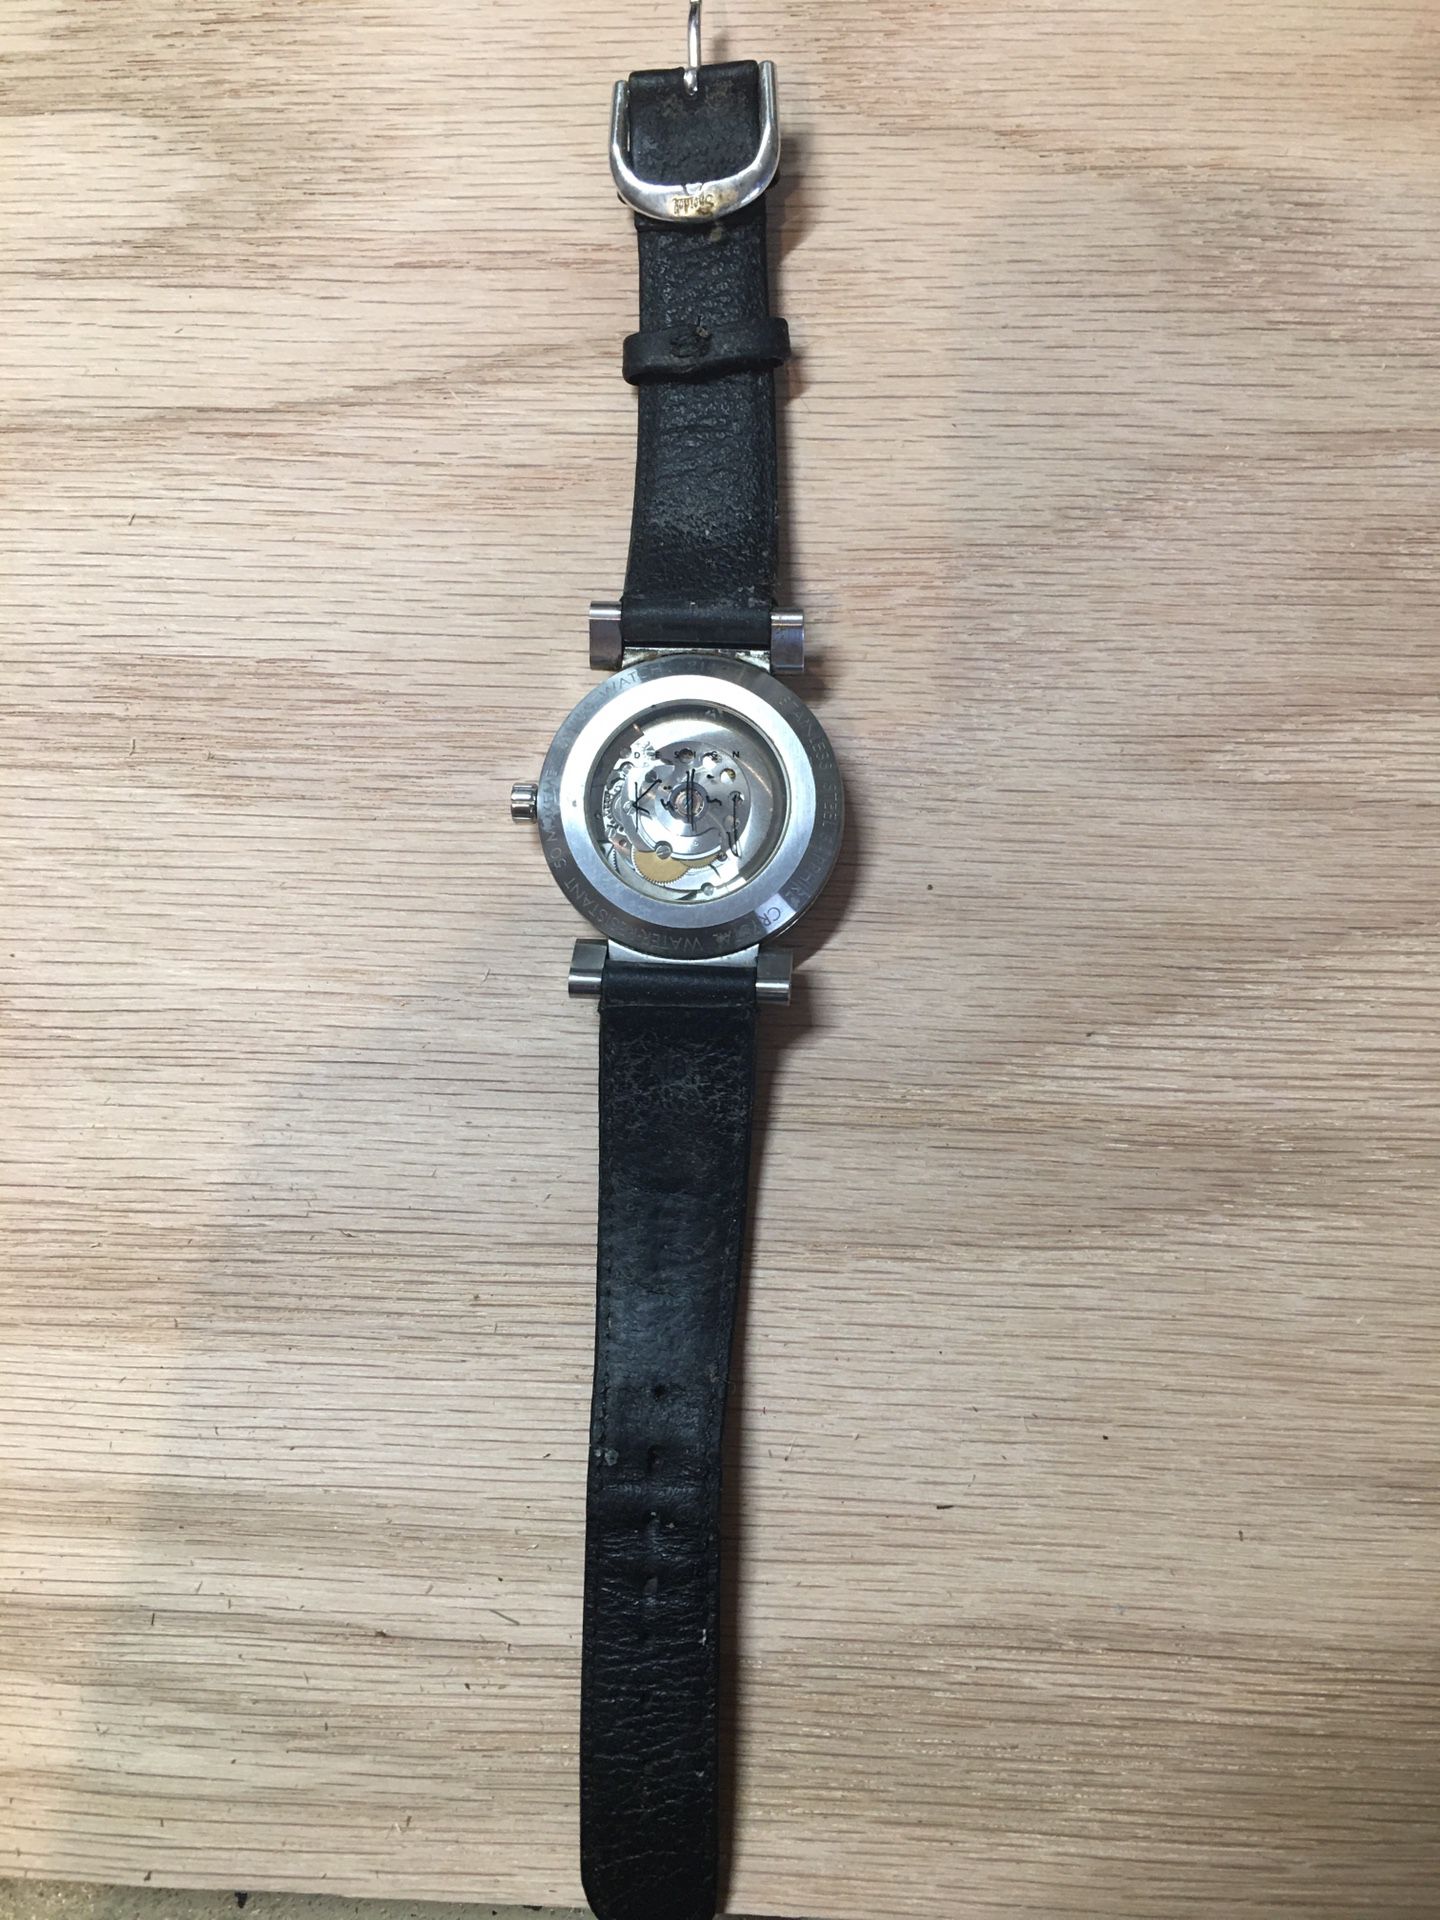 Xemex Swiss watch